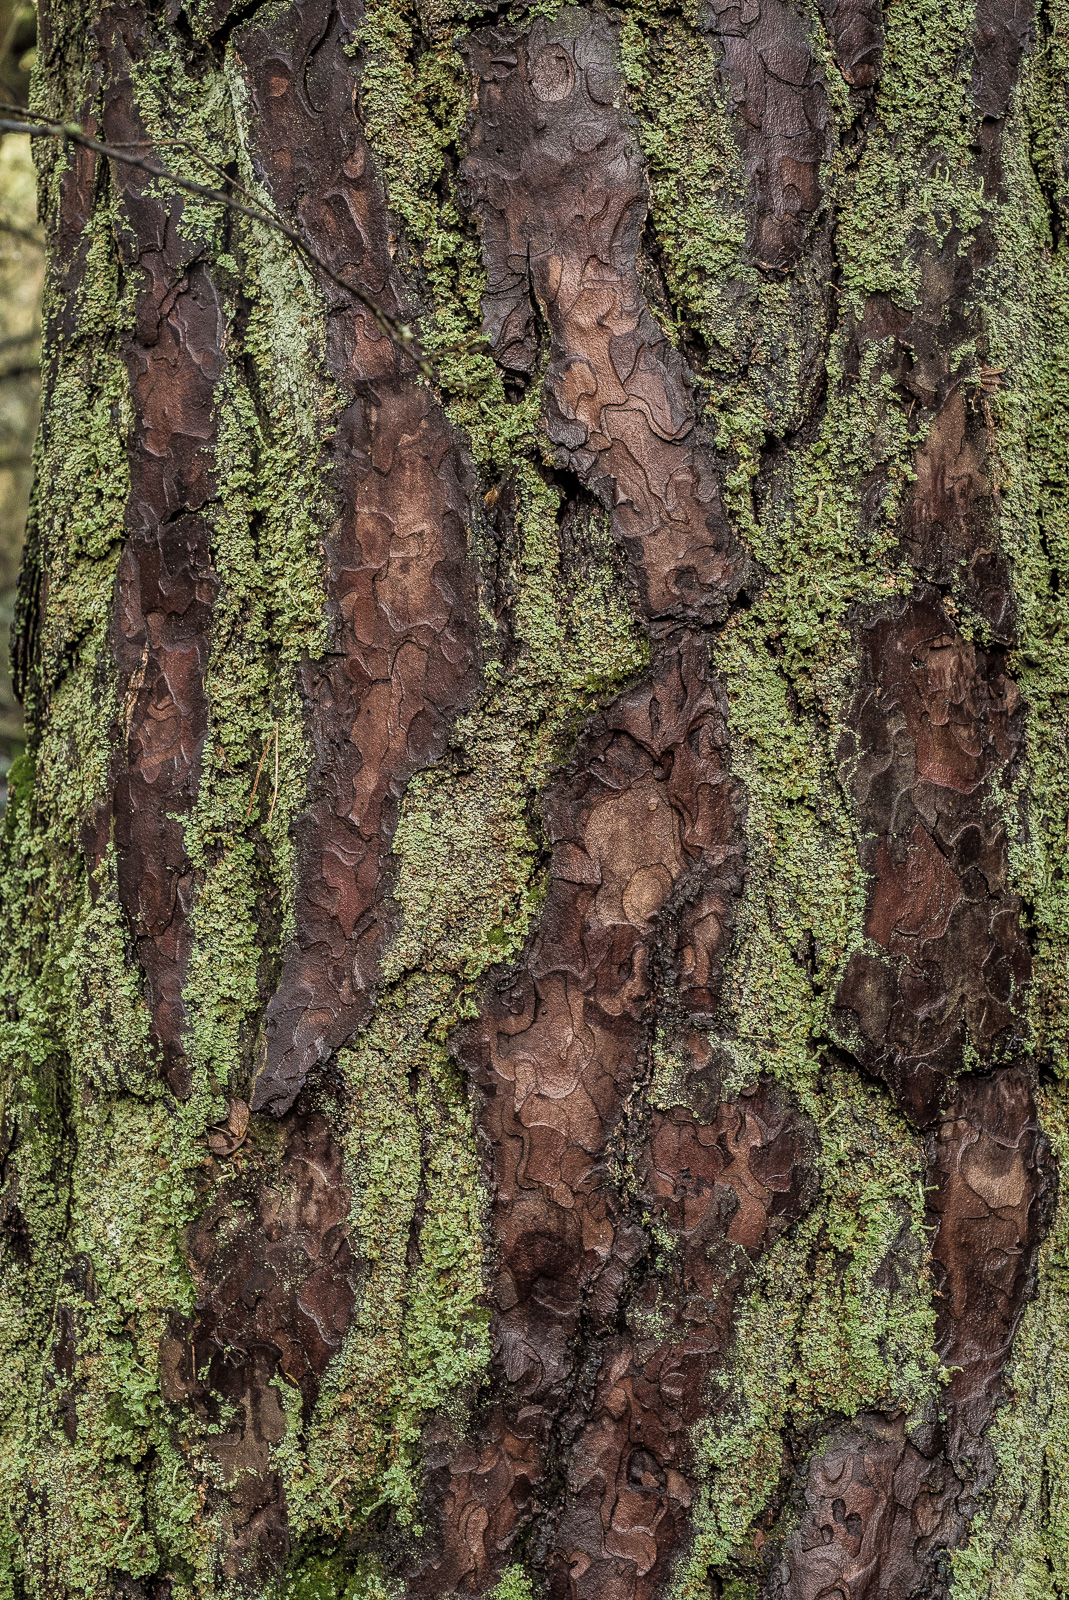 Ein Stamm eines Baums mit prägnanter geschichteter Rinde. Zwischen den braunen Bereichen der Rinde immer wieder Stellen, die grün mit Moos überzogen sind, die Farbkontraste bilden eine interessante Struktur.